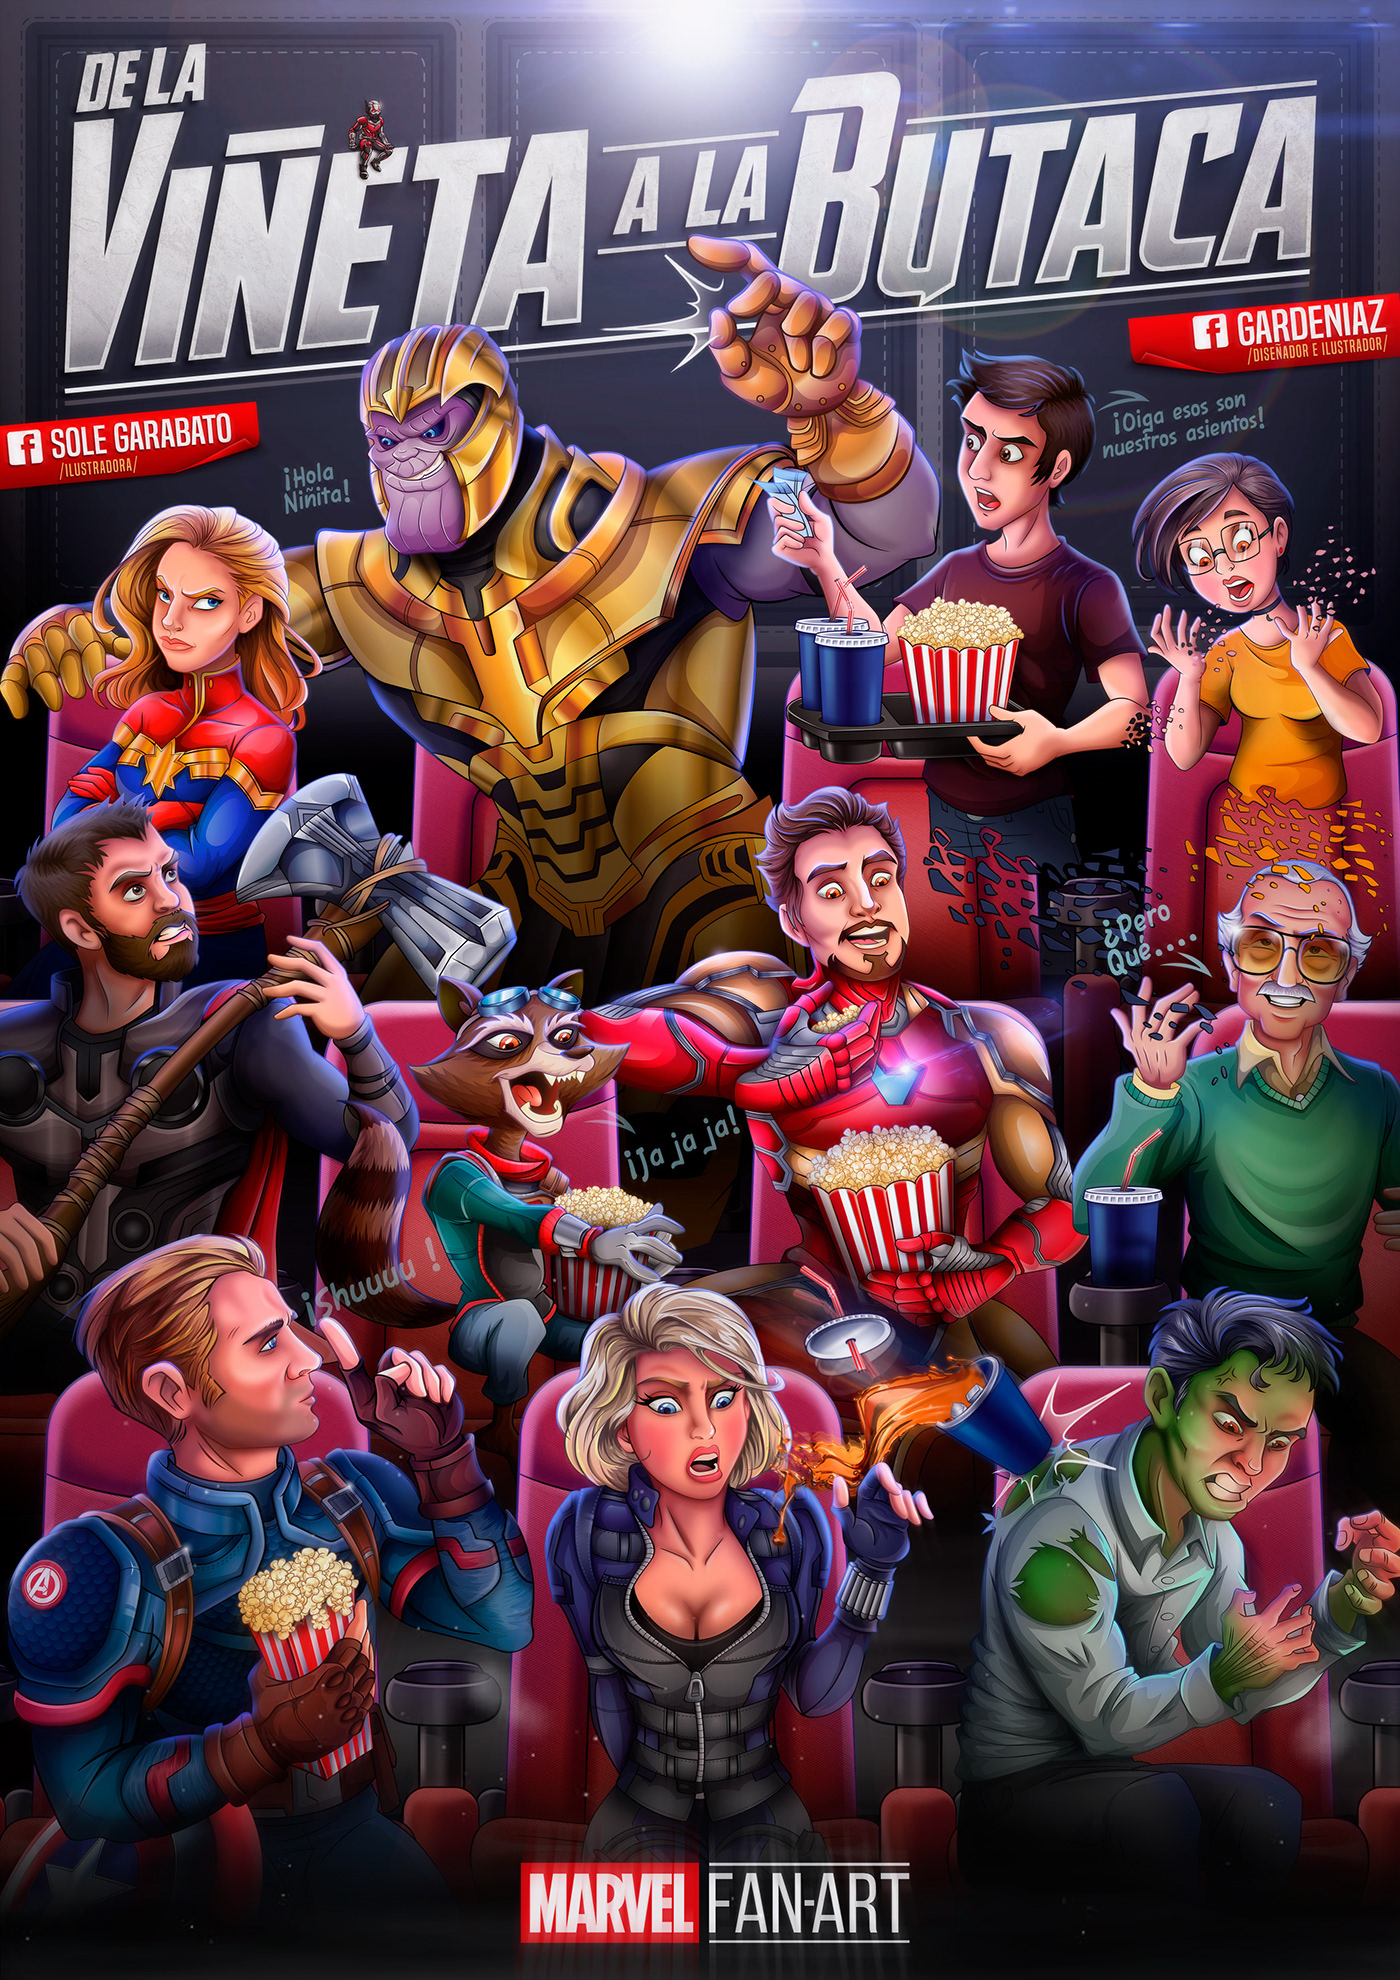 marvel dc endgame Avengers comic Gardeniaz wacom photoshop Illustrator design